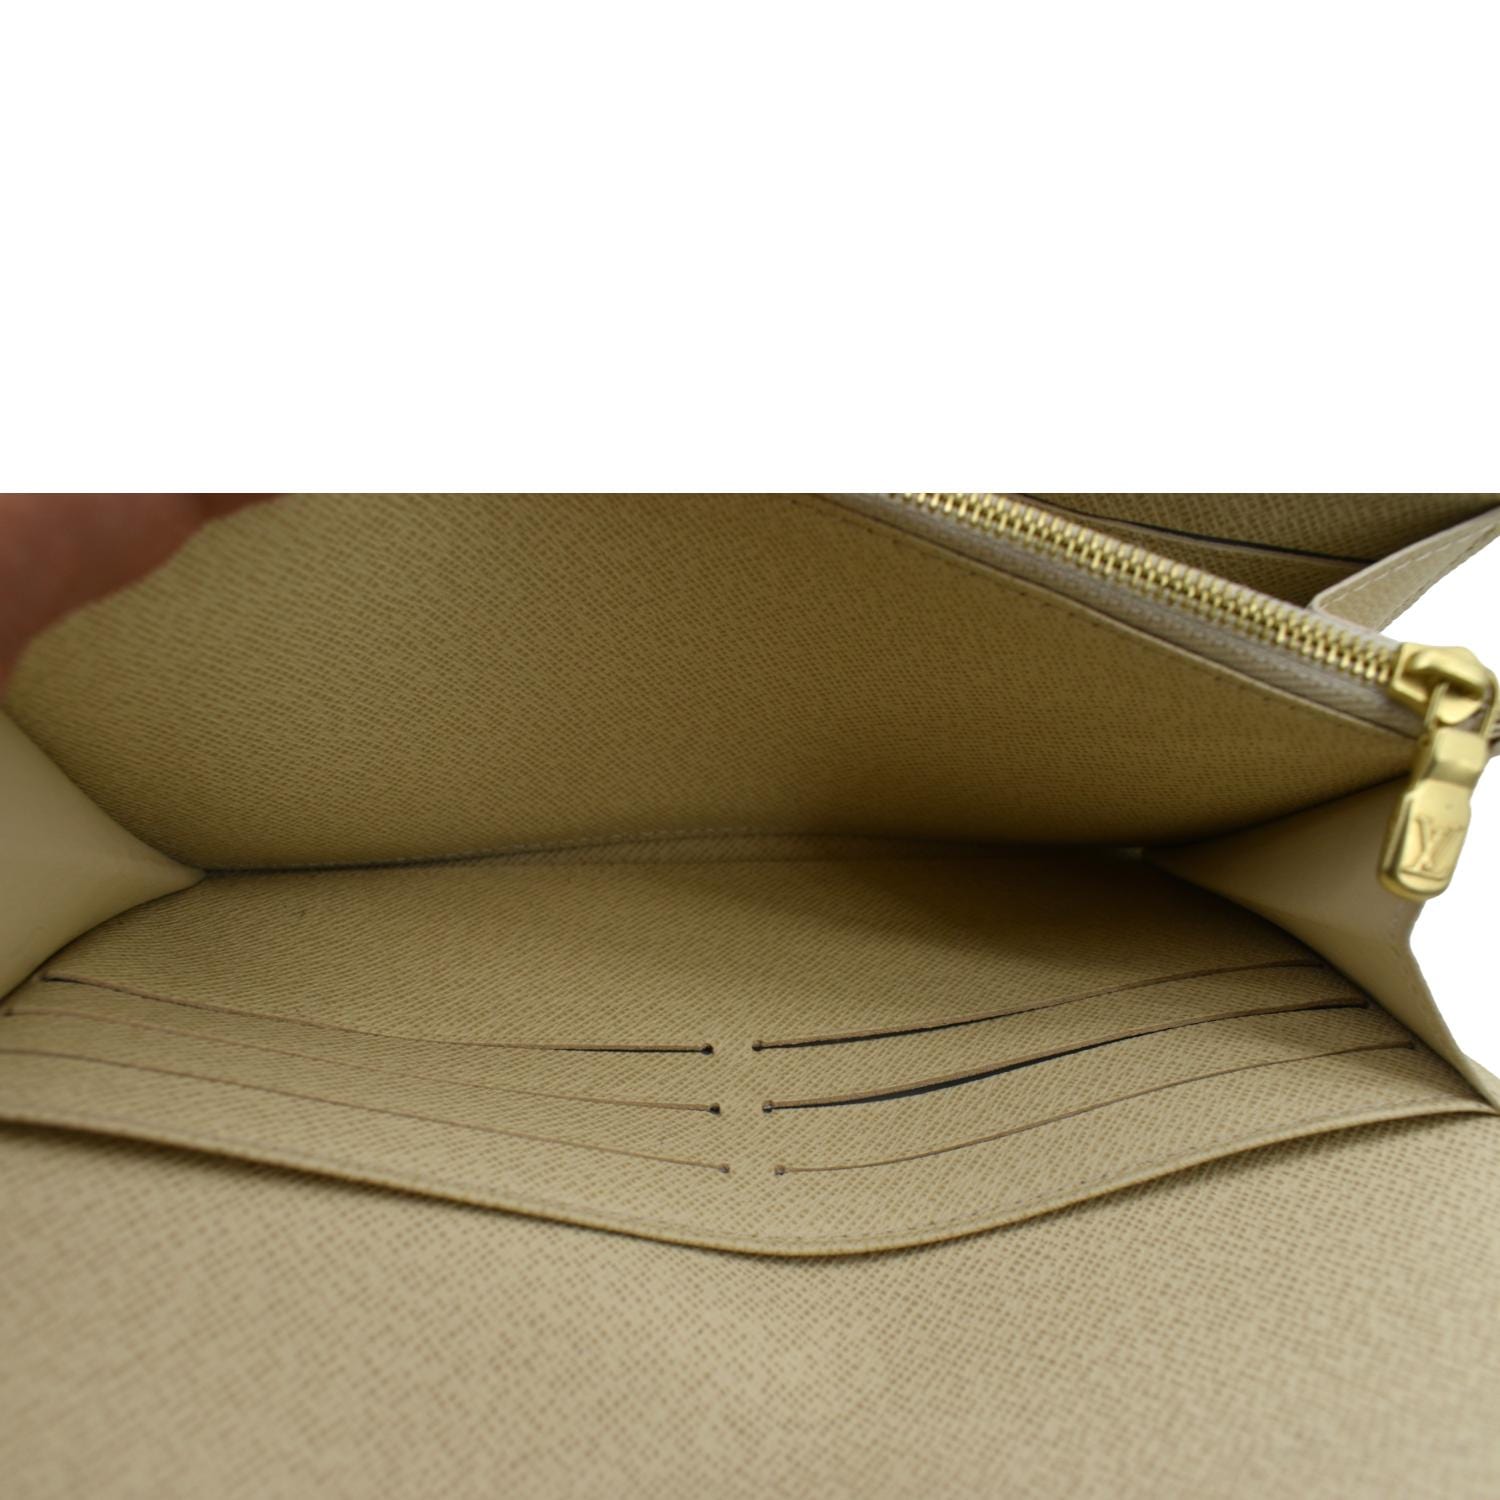 Louis Vuitton 2015 Damier Azur Pattern Sarah Wallet - Neutrals Wallets,  Accessories - LOU811301